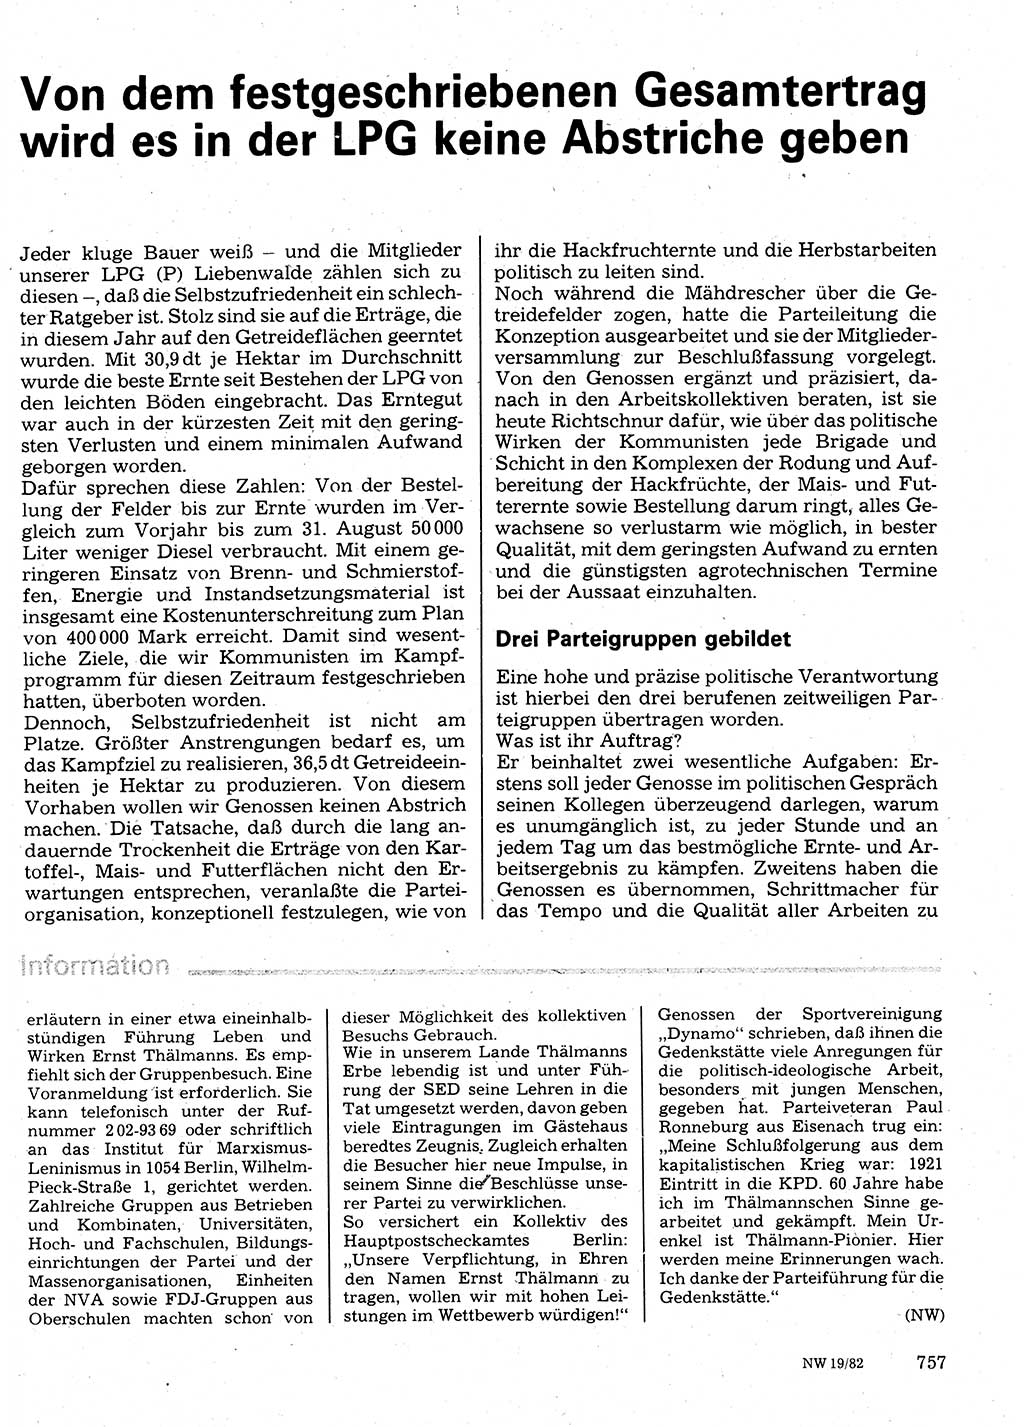 Neuer Weg (NW), Organ des Zentralkomitees (ZK) der SED (Sozialistische Einheitspartei Deutschlands) für Fragen des Parteilebens, 37. Jahrgang [Deutsche Demokratische Republik (DDR)] 1982, Seite 757 (NW ZK SED DDR 1982, S. 757)